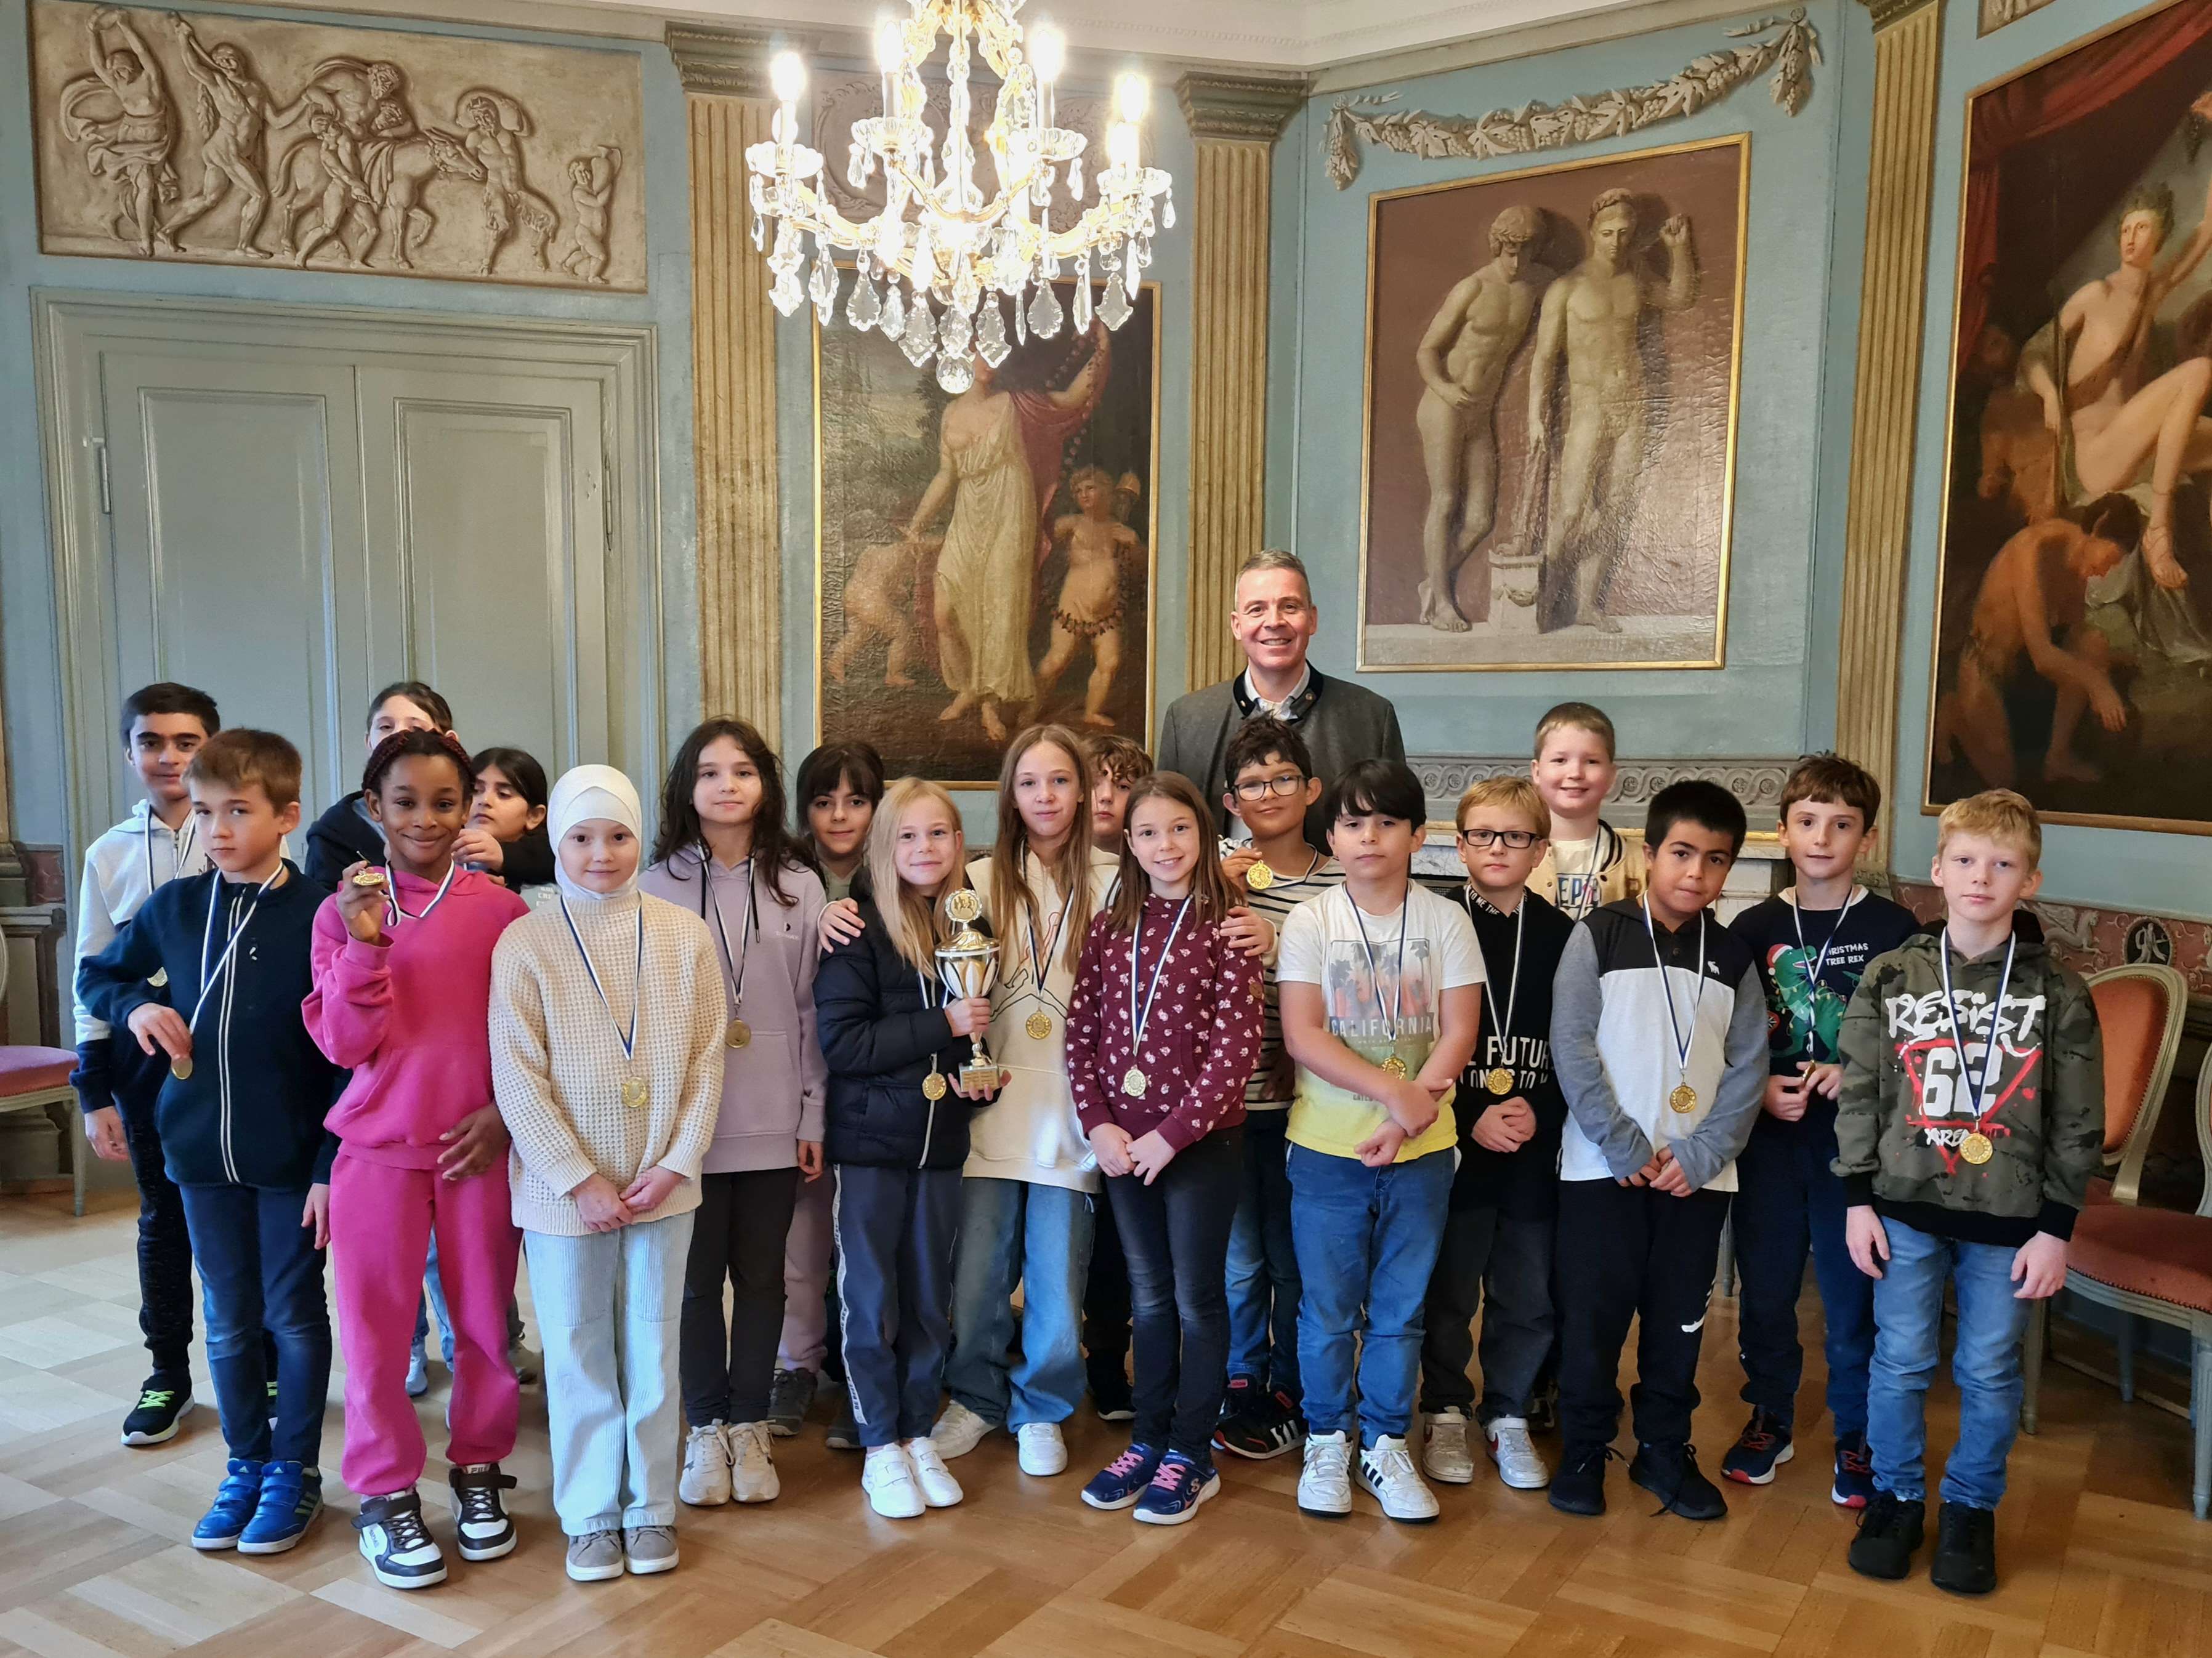  Oberbürgermeister Hans D. Reinwald mit den Schülerinnen und Schülern der Klasse 4c im Spiegelsaal des historischen Rathauses 